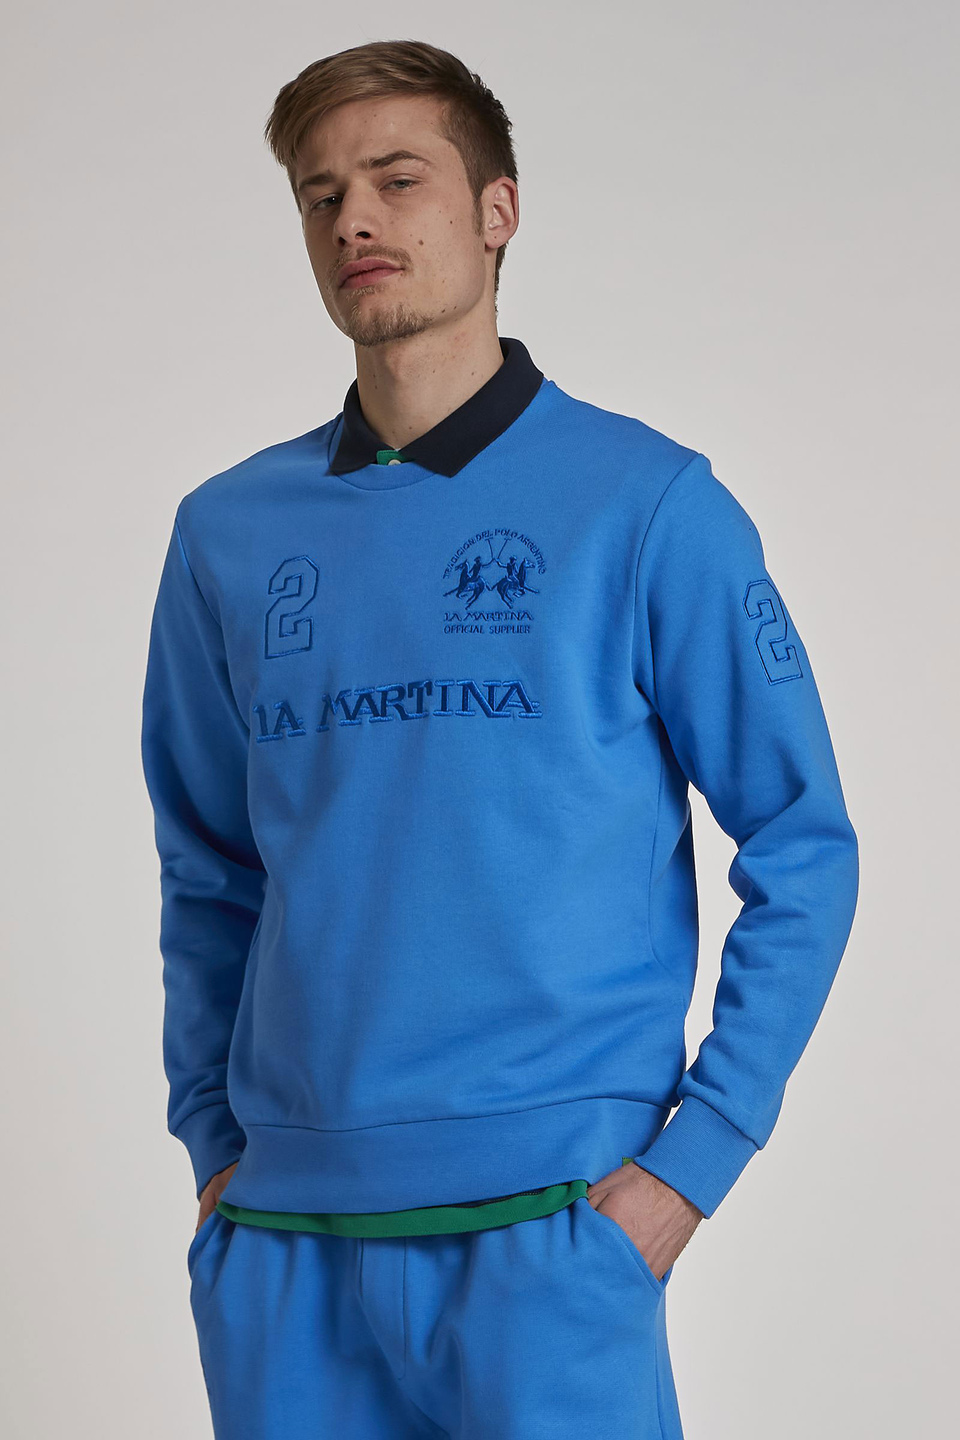 Sweat-shirt ras de cou homme en coton coupe classique - La Martina - Official Online Shop